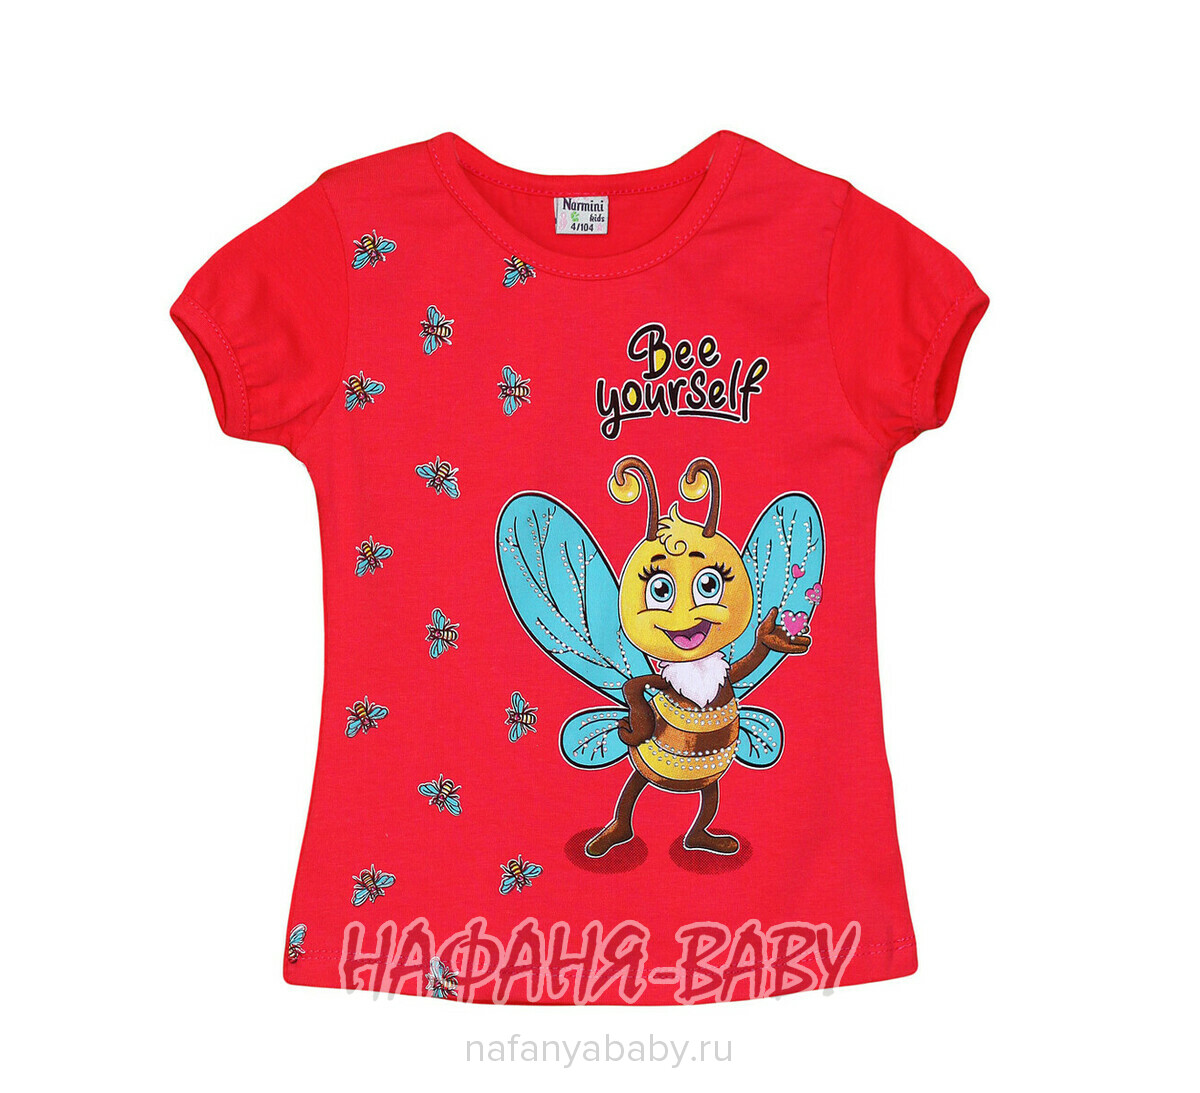 Детская футболка NARMINI, купить в интернет магазине Нафаня. арт: 7601, цвет коралловый